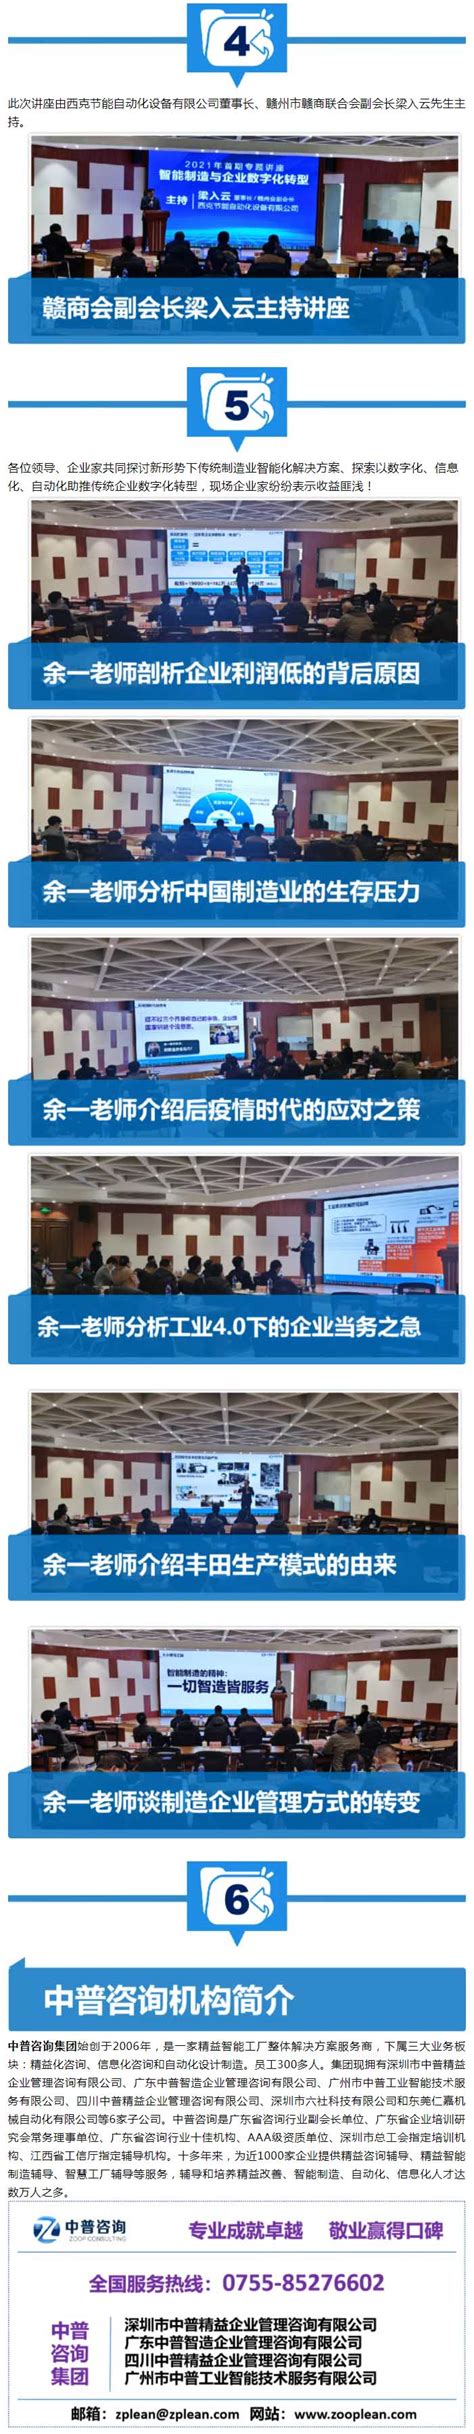 通用人工智能（赣州）研究院第一届理事会第一次会议召开 | 赣州市科学技术局